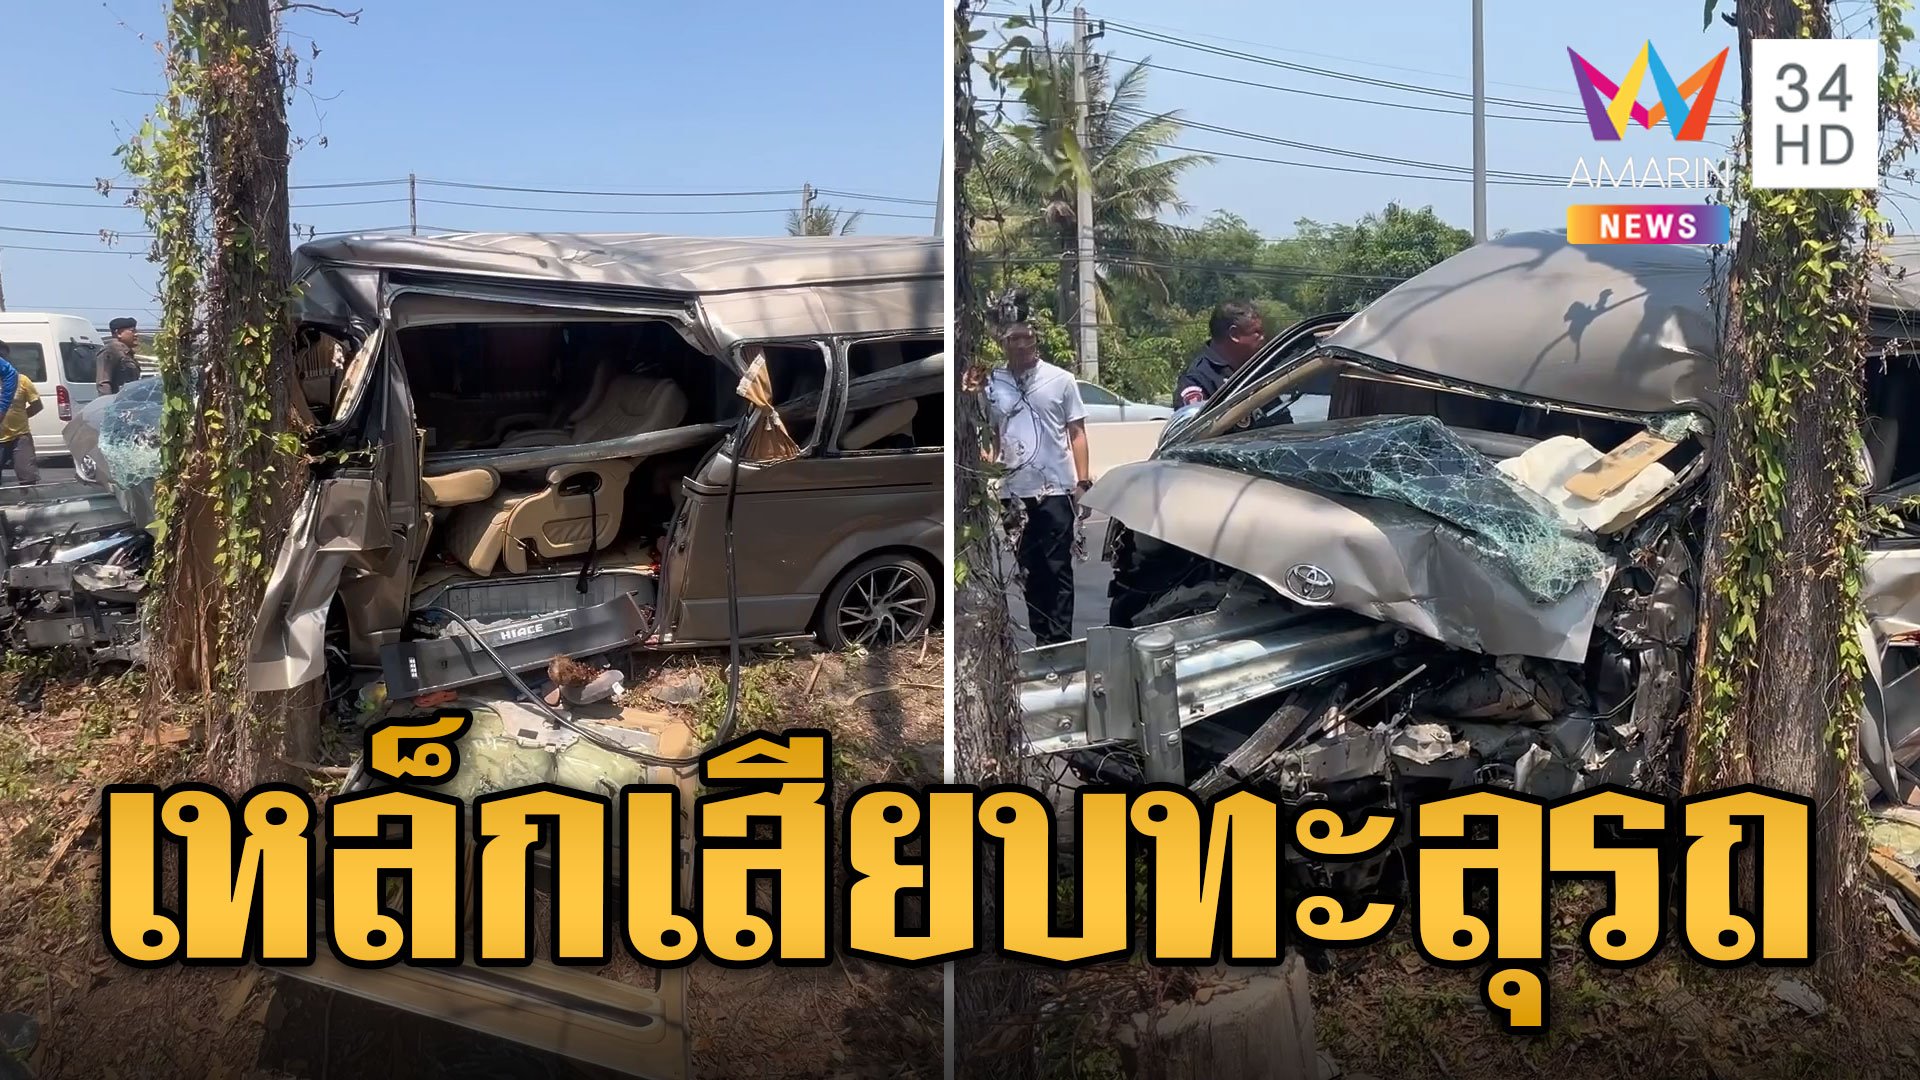 พ่อวูบขับรถชนเหล็กกั้น เสียบทะลุเจ็บยกครัว | ข่าวอรุณอมรินทร์ | 30 เม.ย. 67 | AMARIN TVHD34